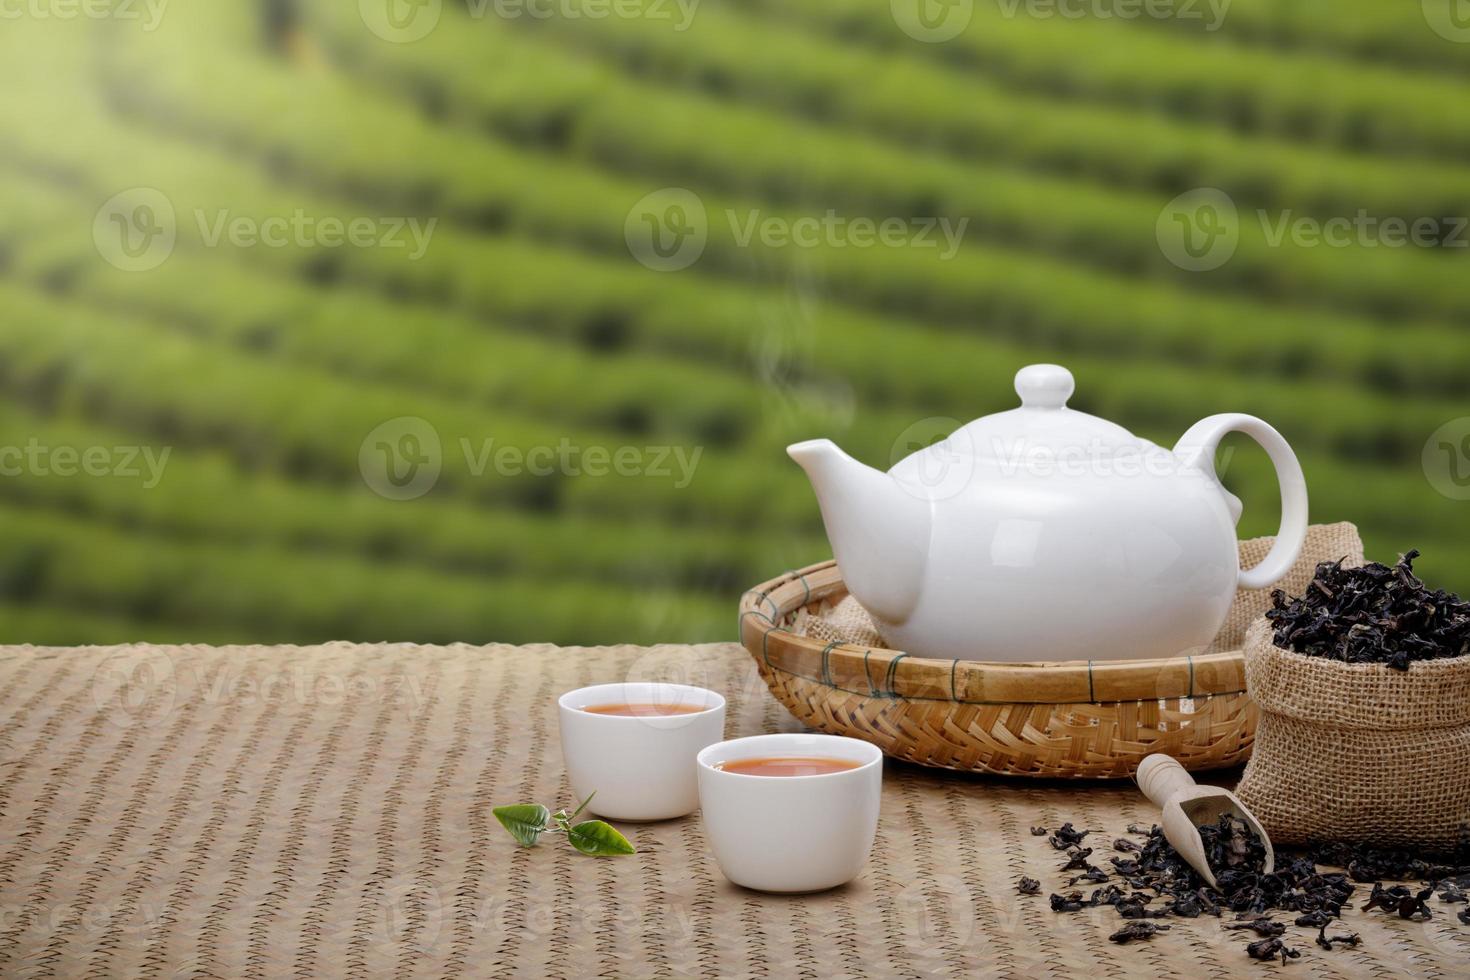 warm kop van thee met theepot, groen thee bladeren en droog kruiden Aan de bamboe mat Bij ochtend- in plantages achtergrond met leeg ruimte, biologisch Product van de natuur voor gezond met traditioneel foto